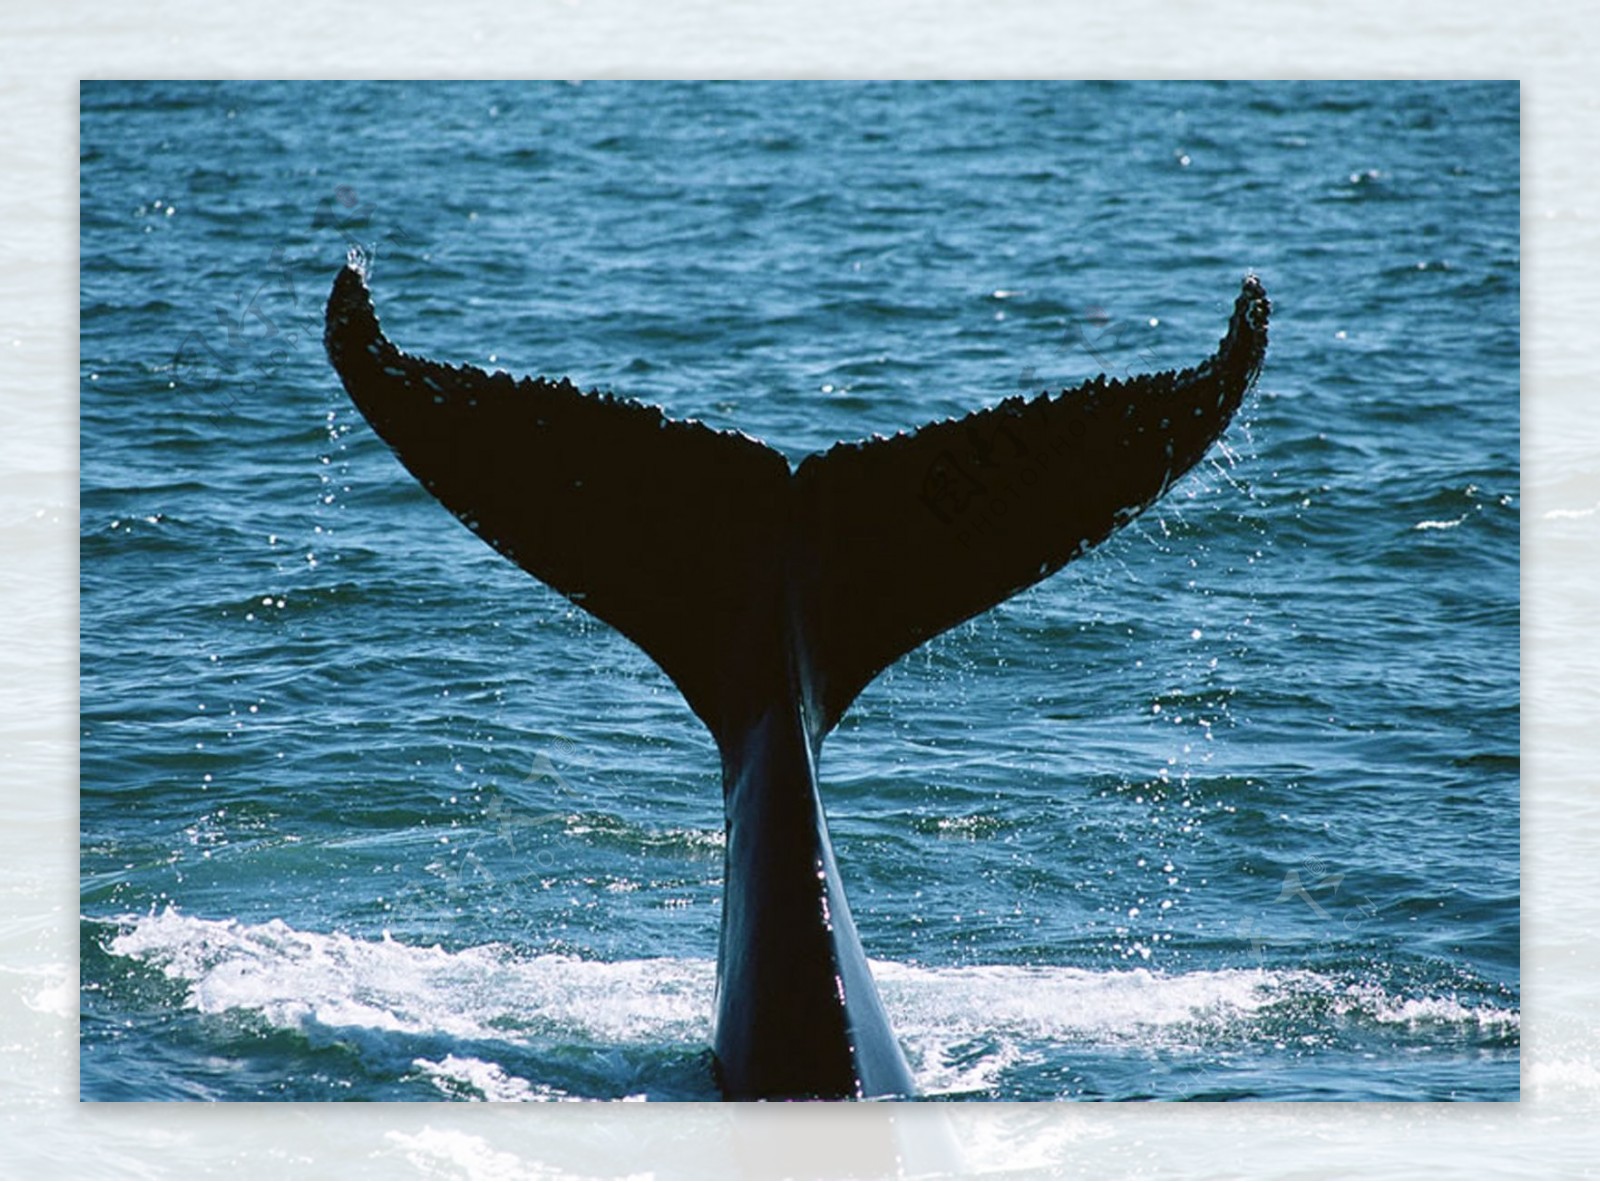 鲸鱼尾巴图片